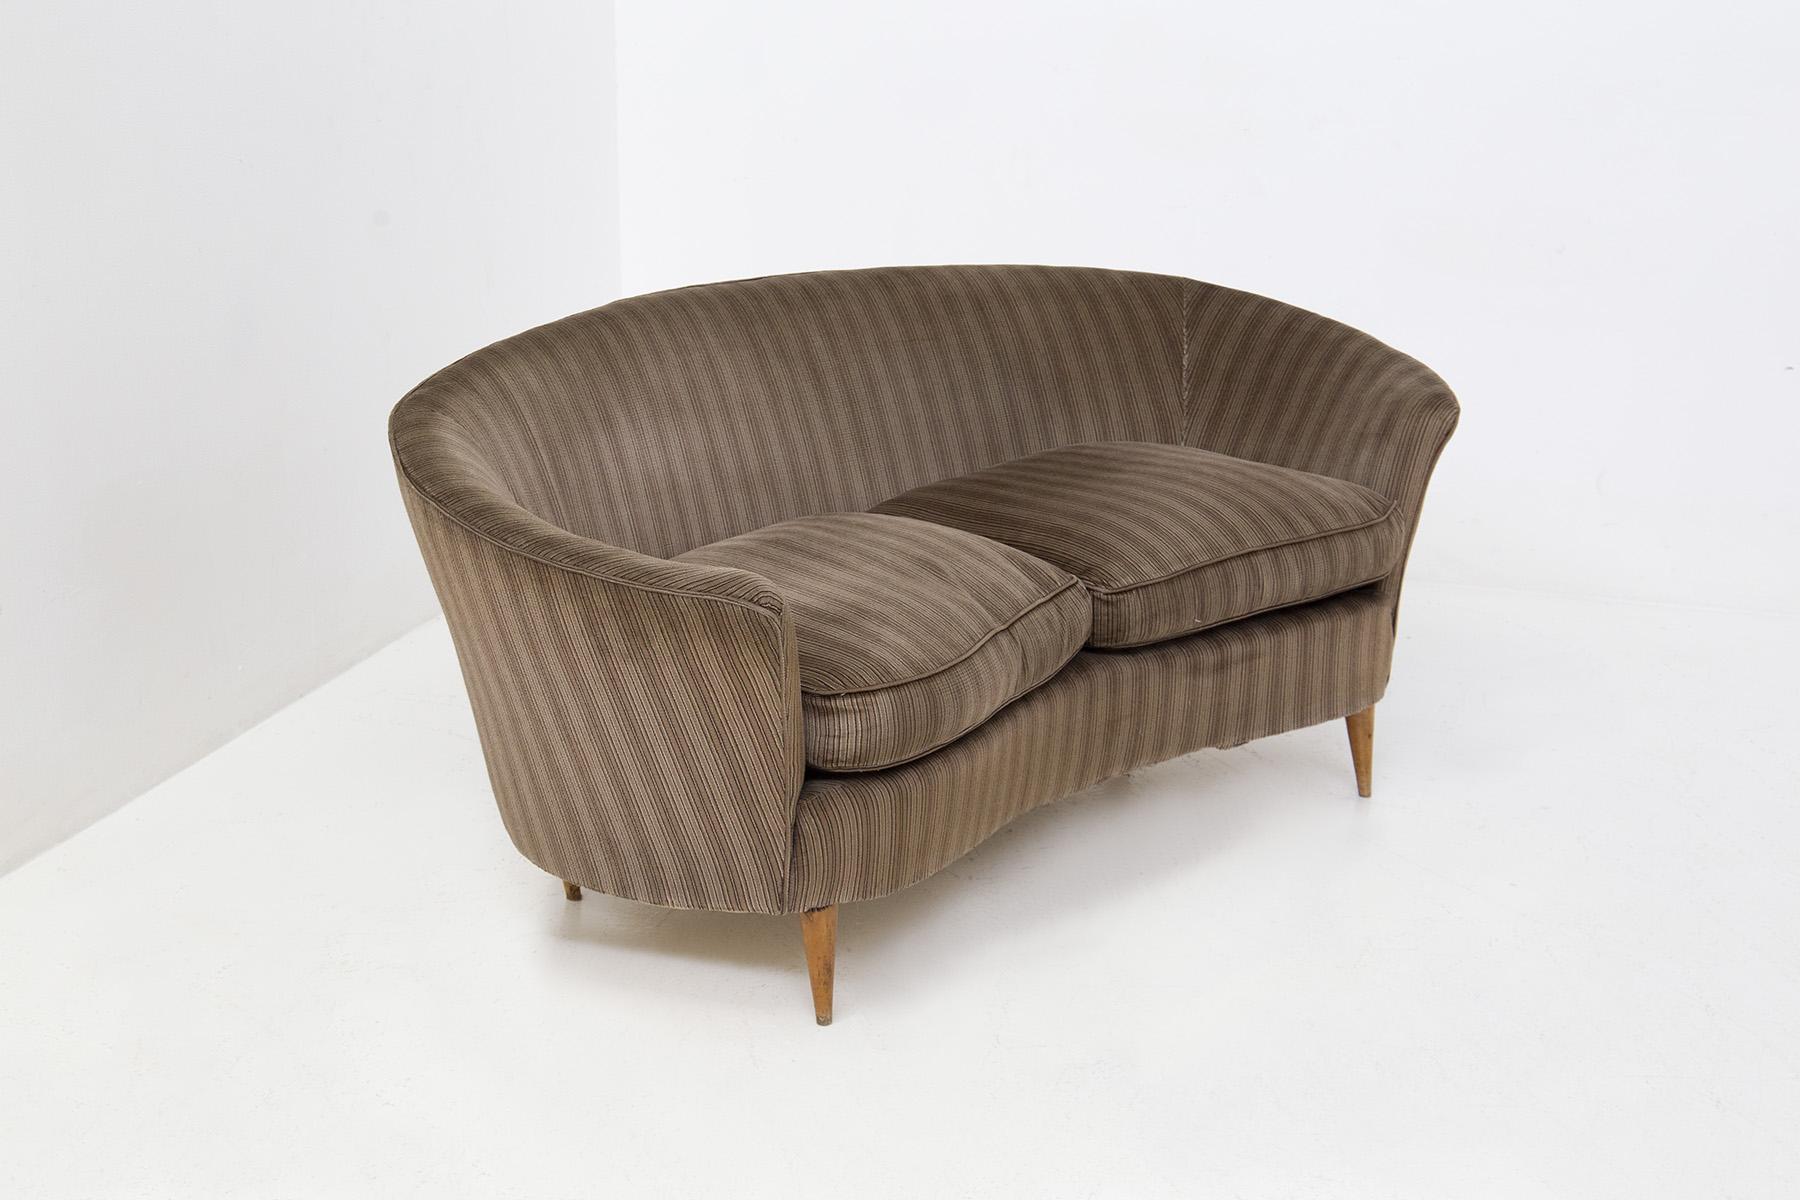 Élégant petit canapé de salon italien attribué à Ico Parisi des années 1950. Le canapé est dans son état d'origine, on retrouve également son tissu d'origine de l'époque en velours rayé gris-marron. Le canapé peut être classé comme une causeuse car